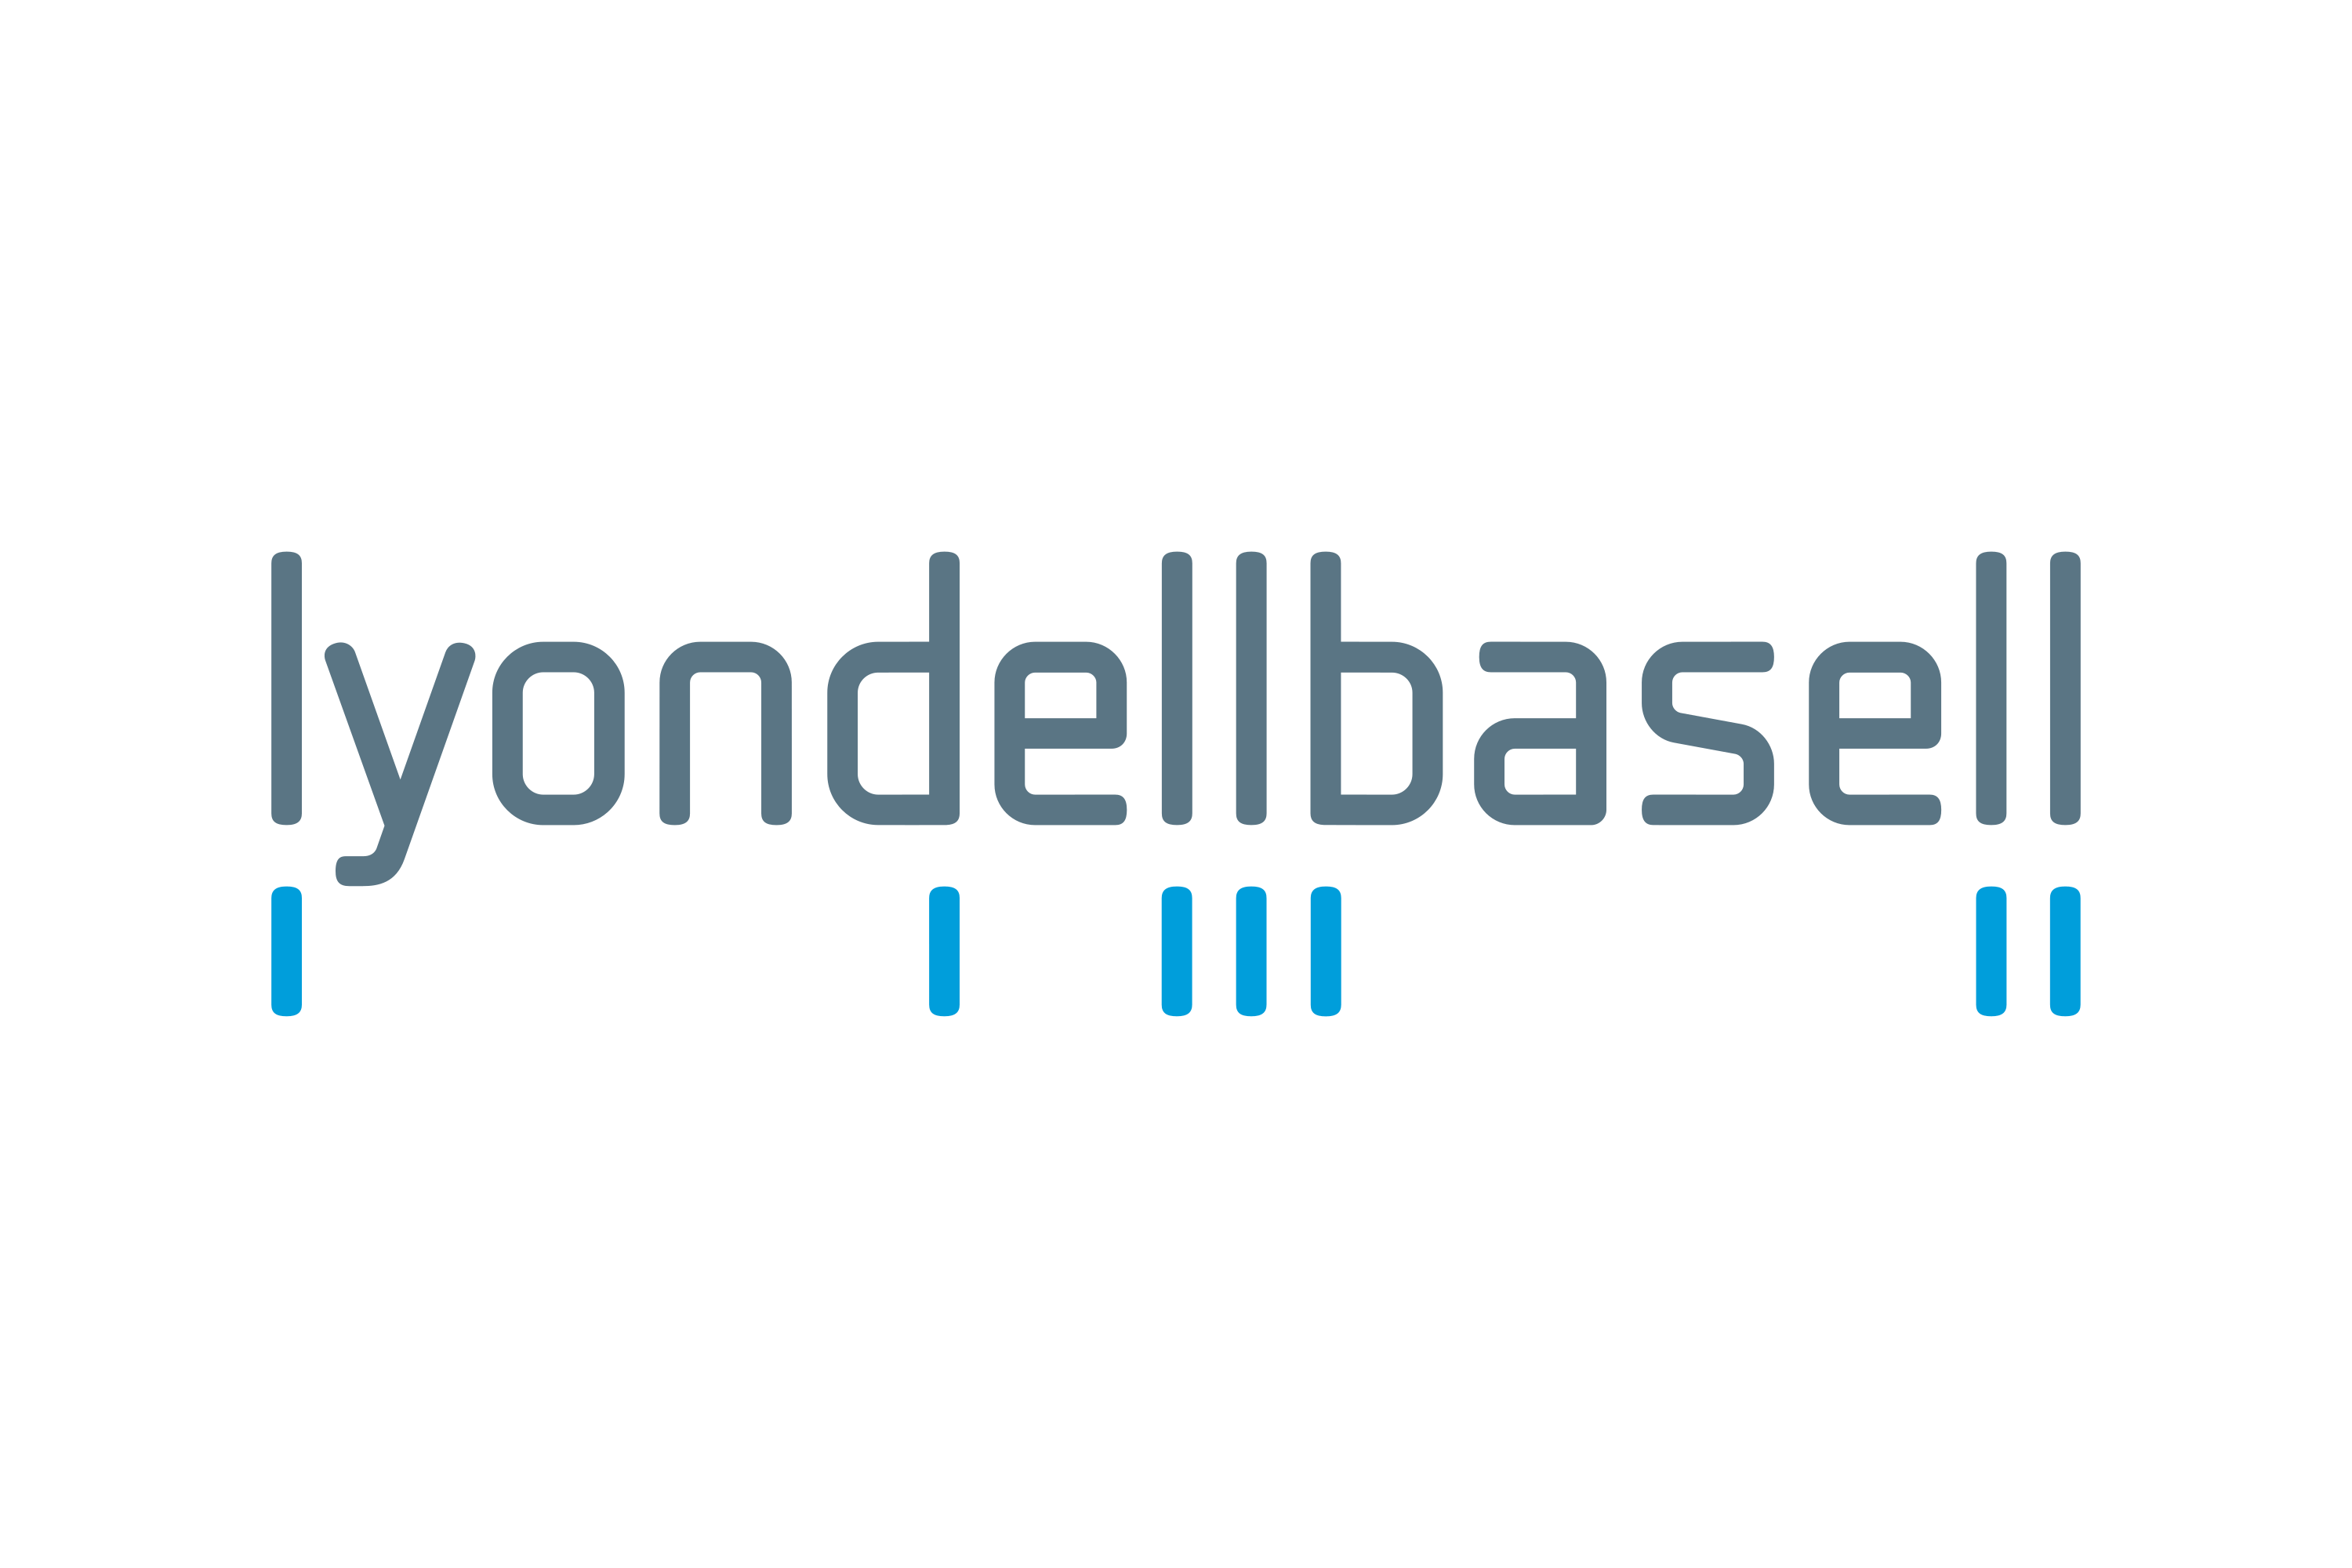 Download LyondellBasell Logo in SVG Vector or PNG File Format - Logo.wine